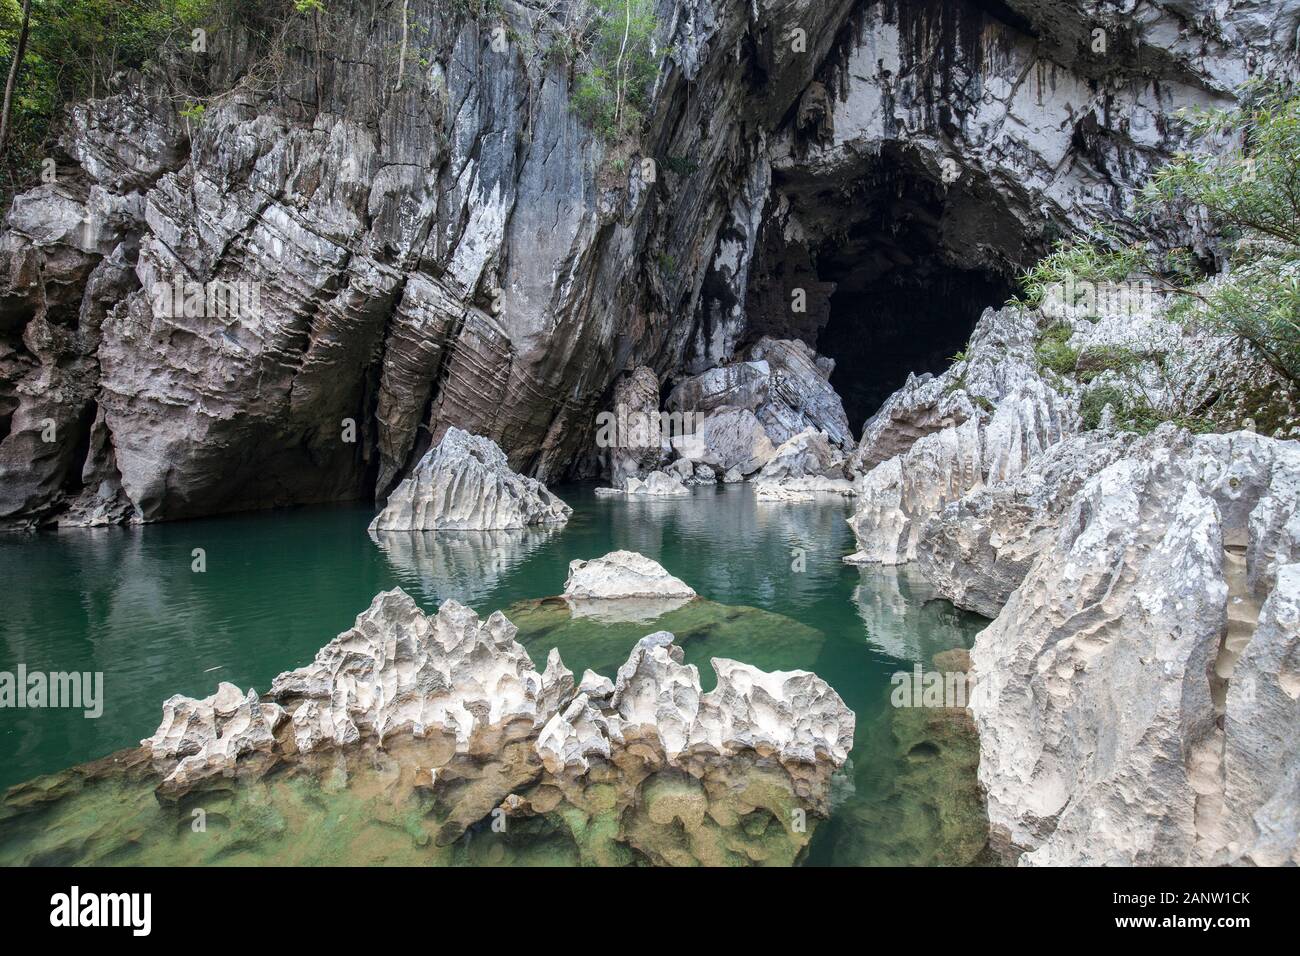 Jagged limestone rock at entrance to Xe Bang Fai River Cave, Laos Stock Photo